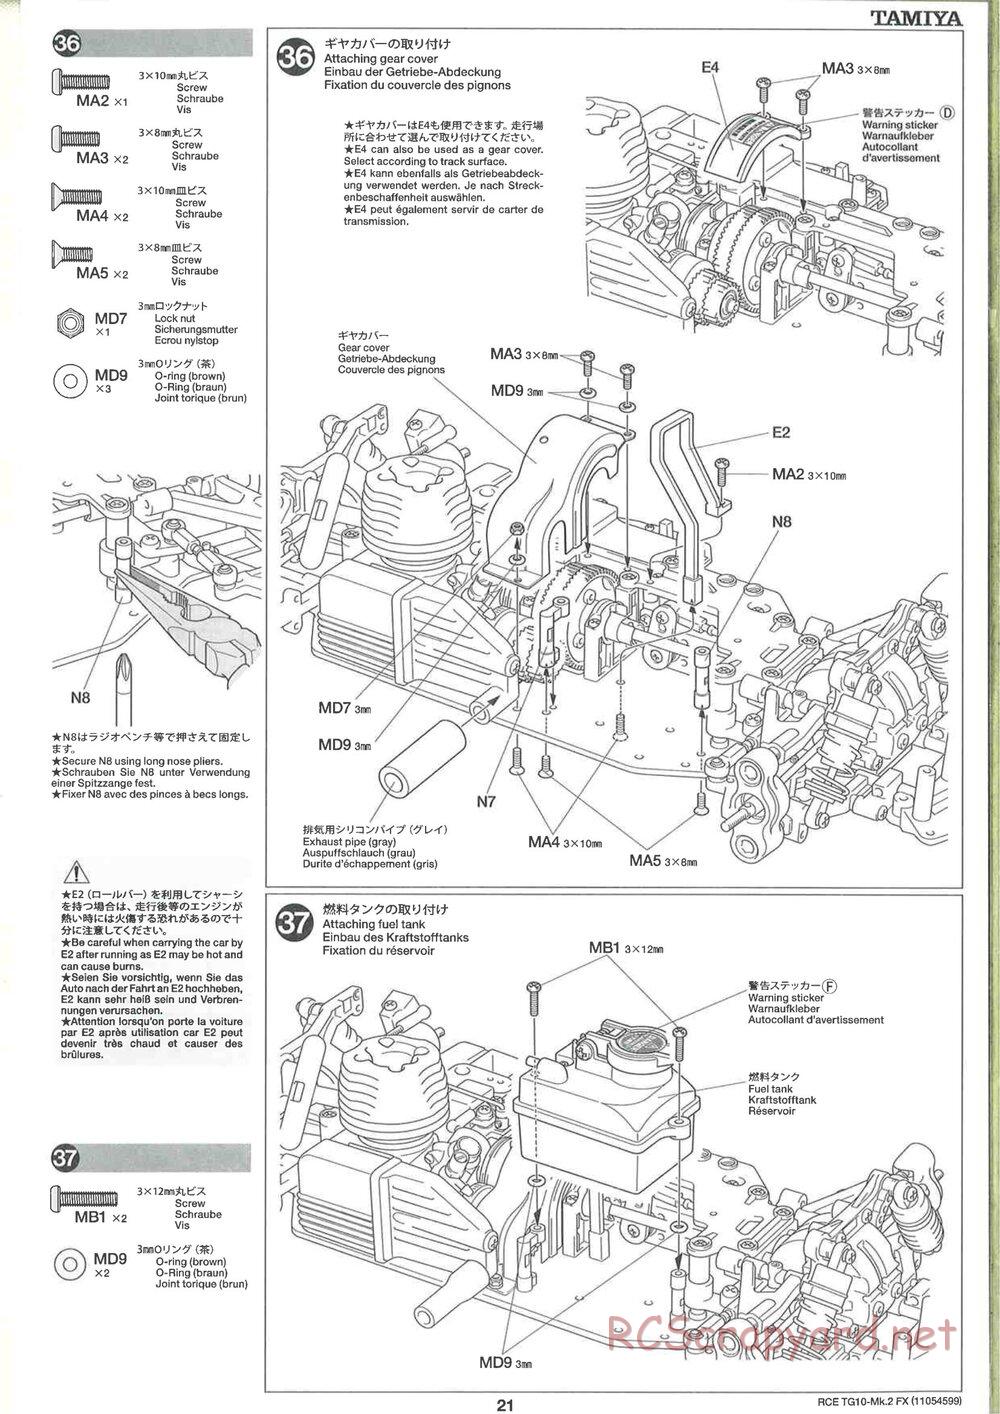 Tamiya - TG10 Mk.2 FX Chassis - Manual - Page 21